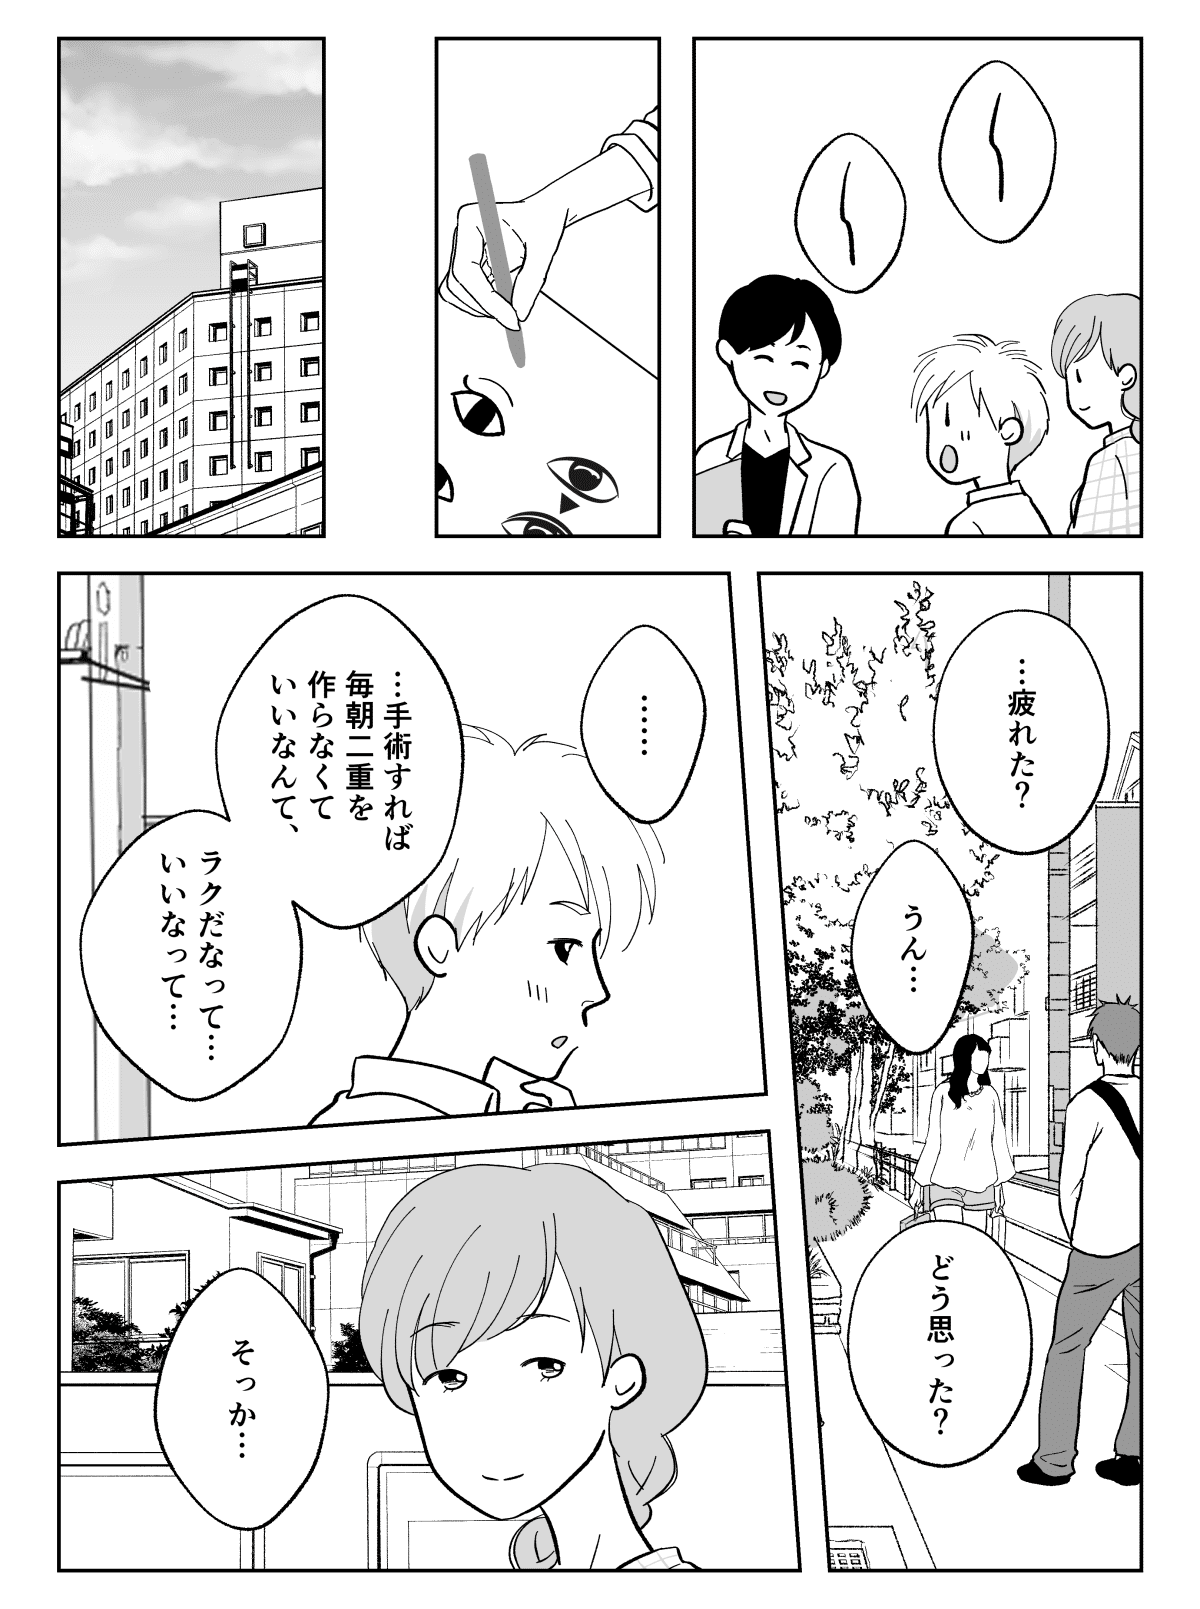 コミック004_003 (1)